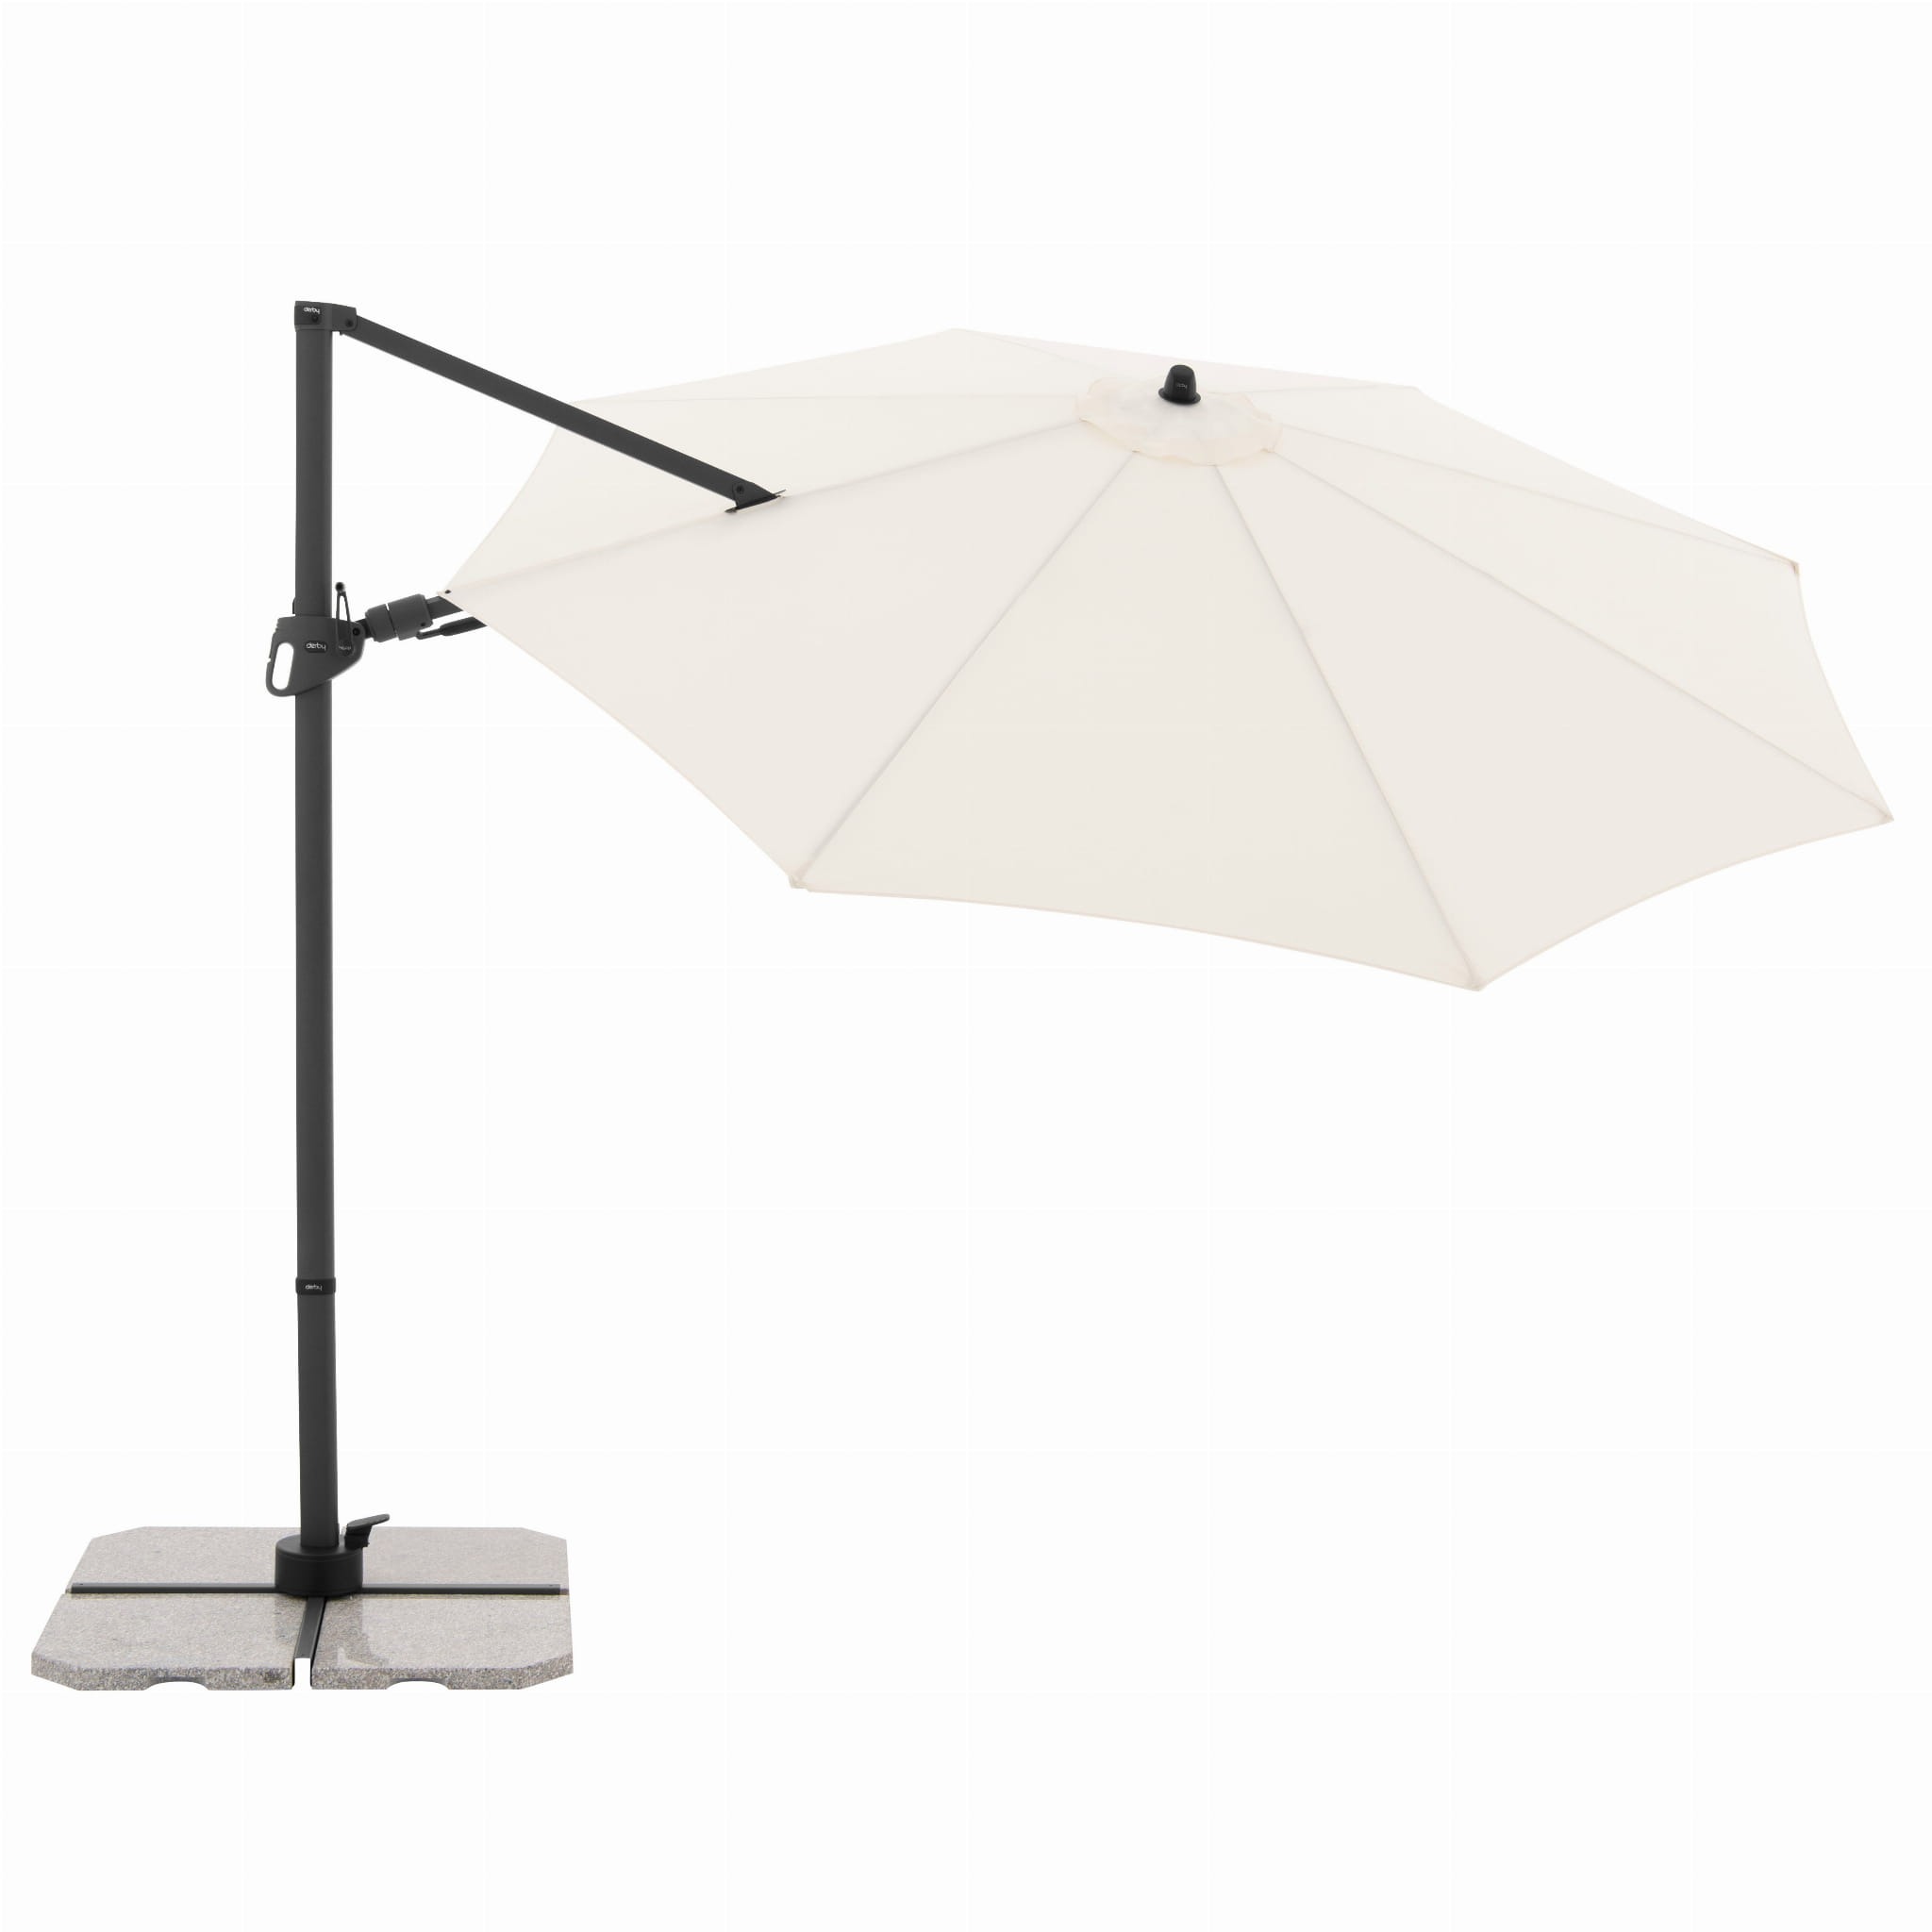 Зонт садовый Doppler Derby DX бежевый 335 см без подставки зонт садовый doppler alu wood антрацитовый 350 см